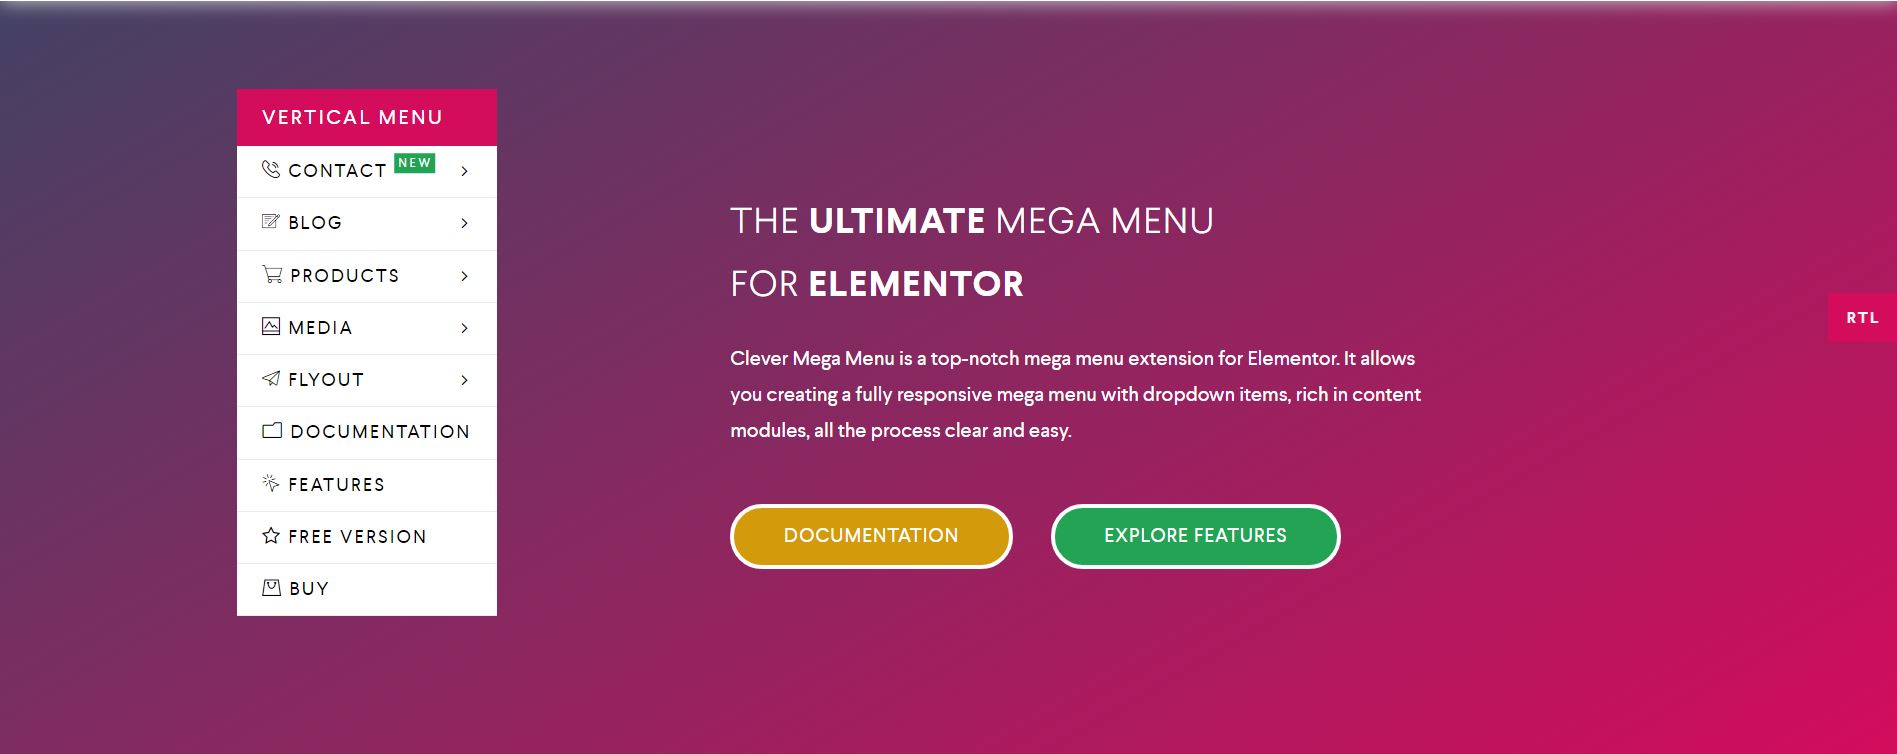 Clever Mega Menu for Elementor